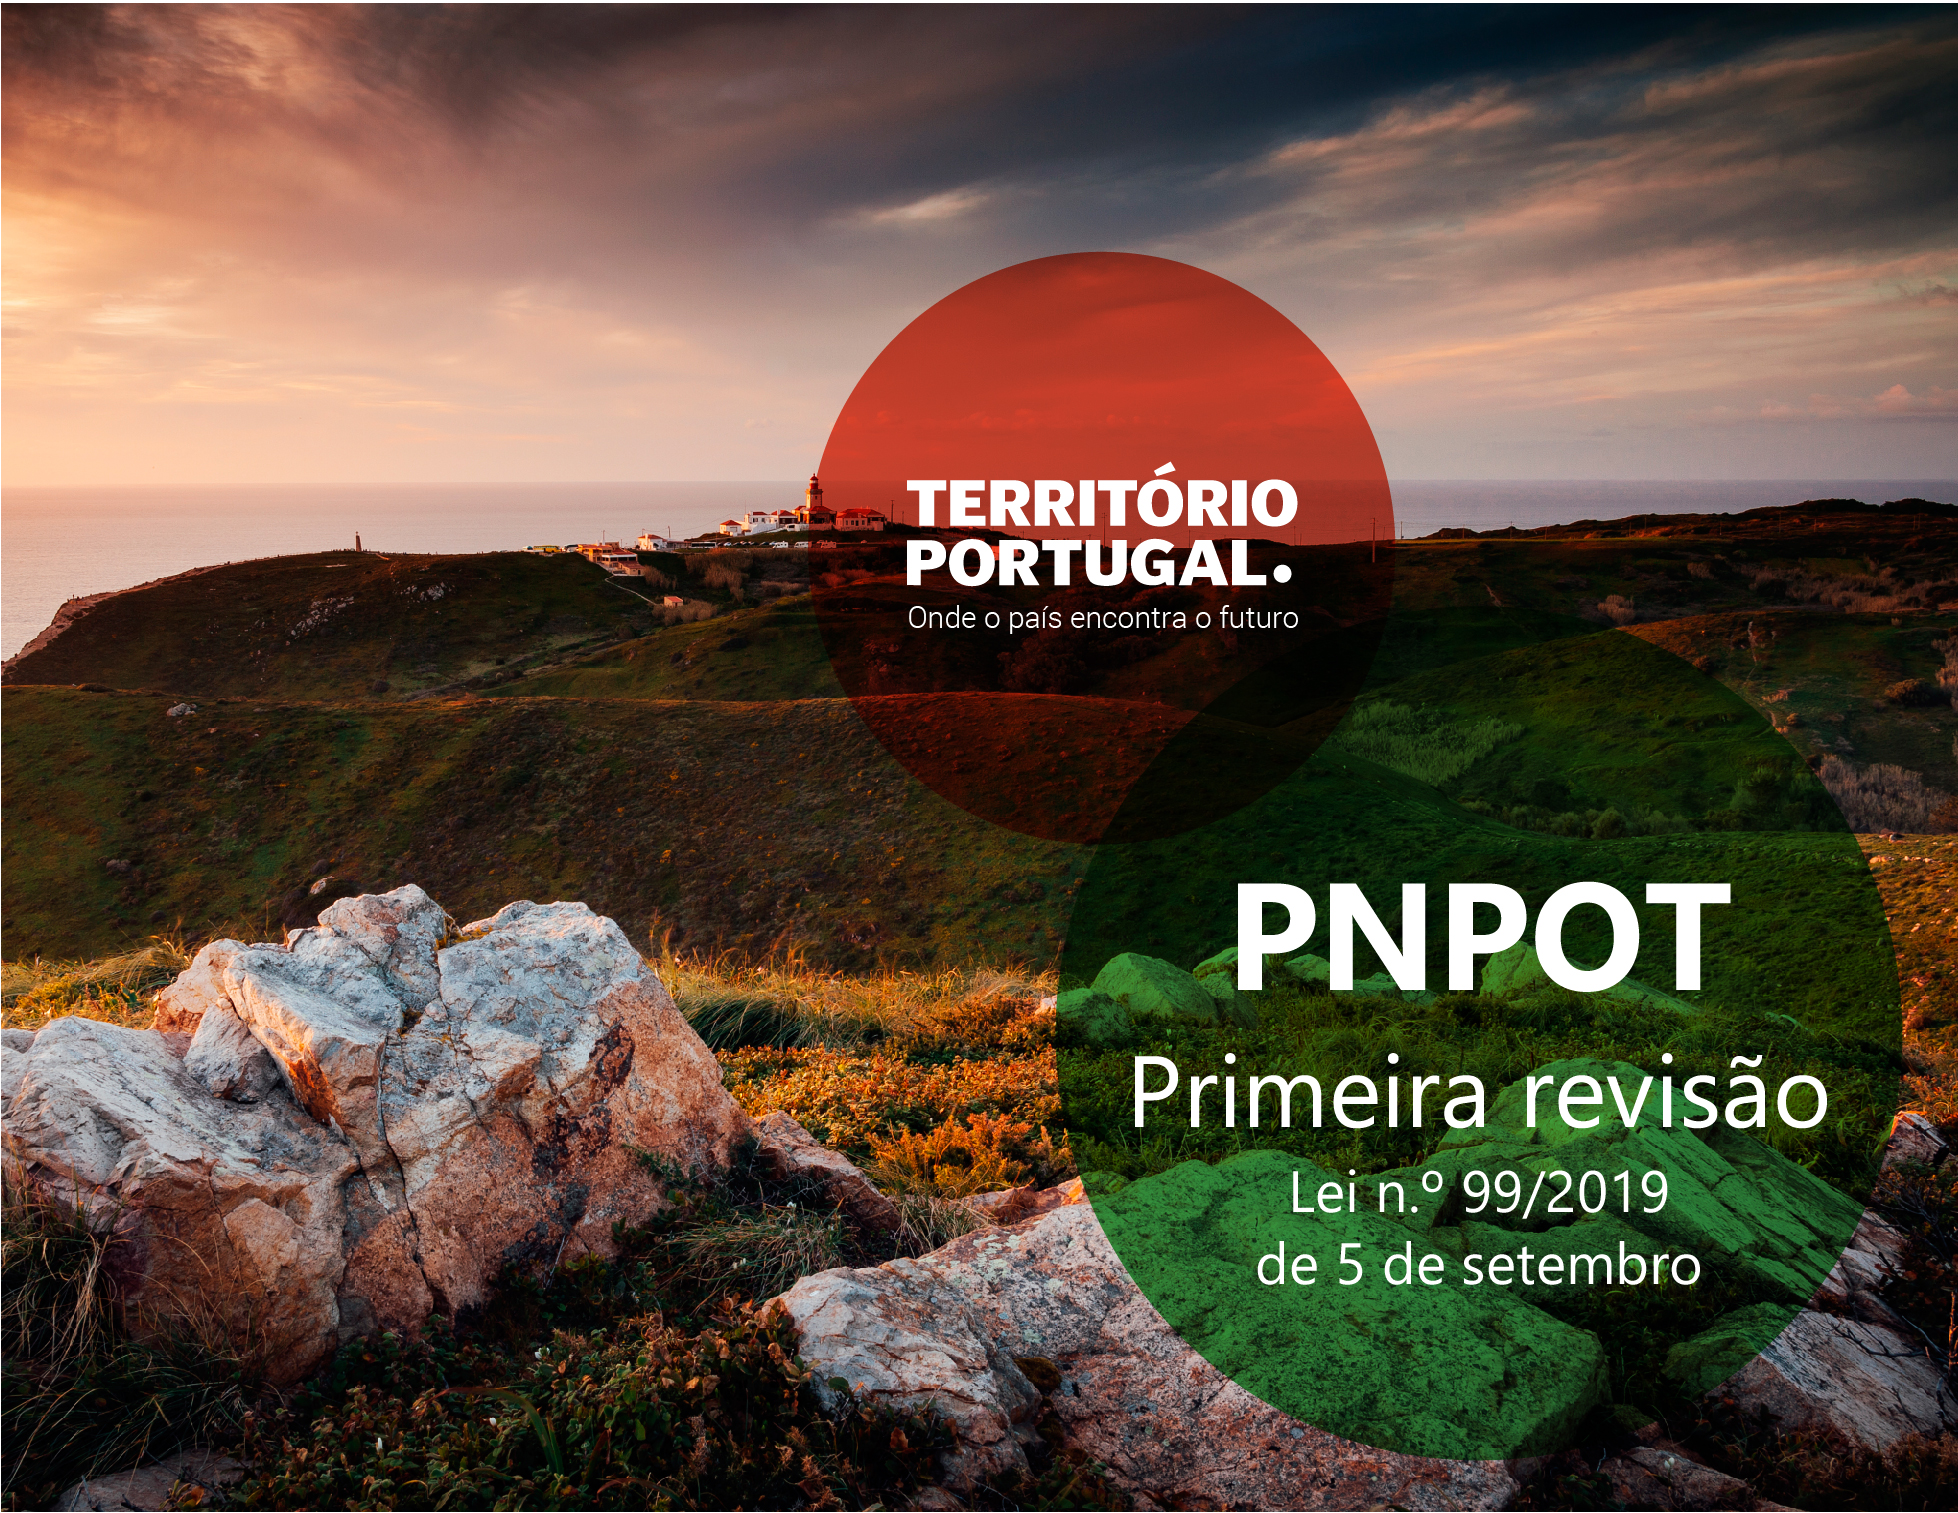 PNPOT - Primeira revisão 